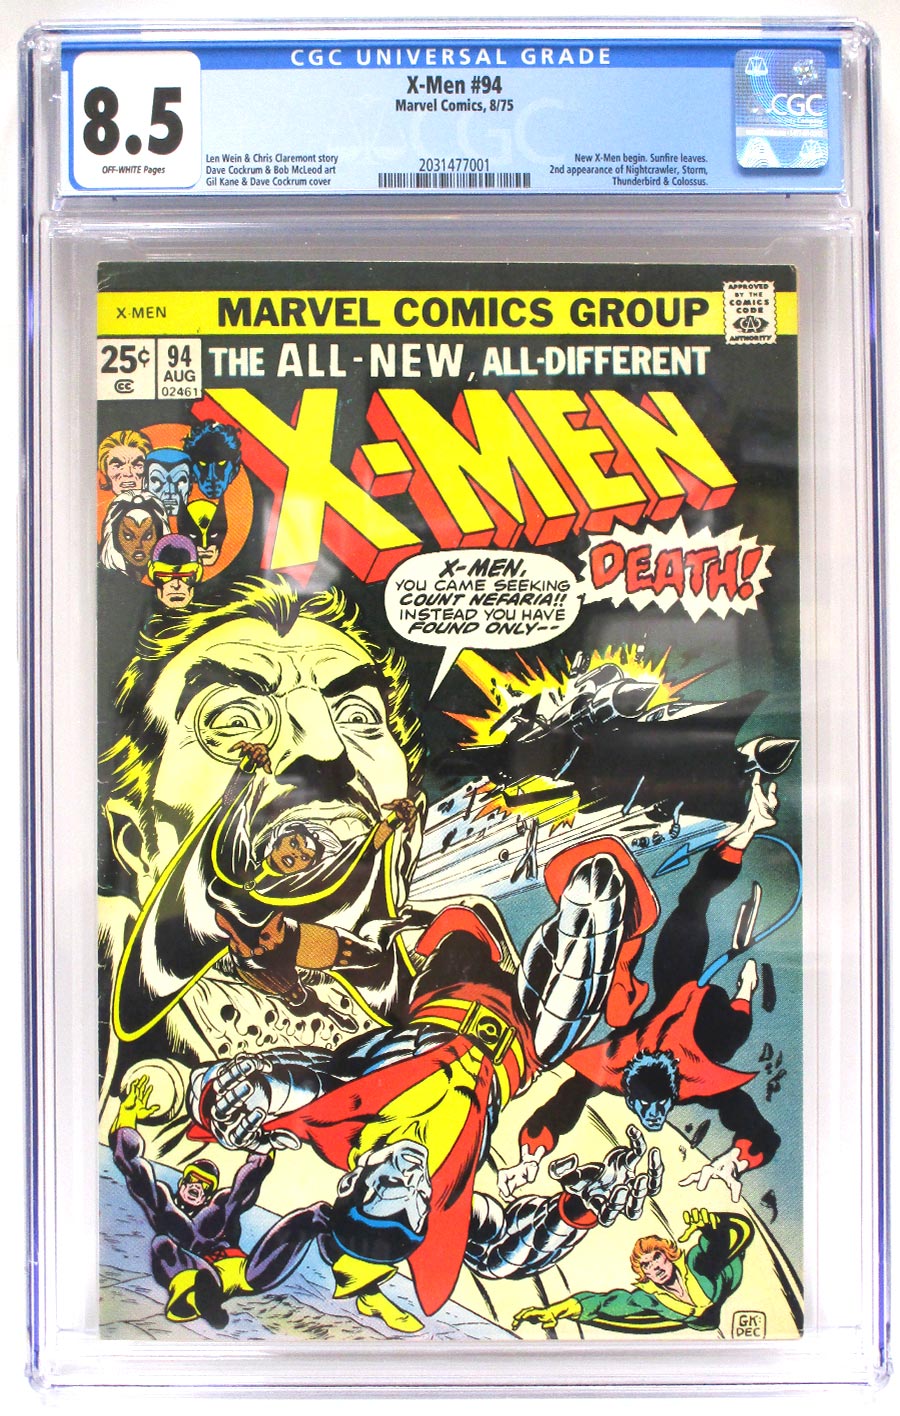 X-Men Vol 1 #94 Cover C CGC 8.5